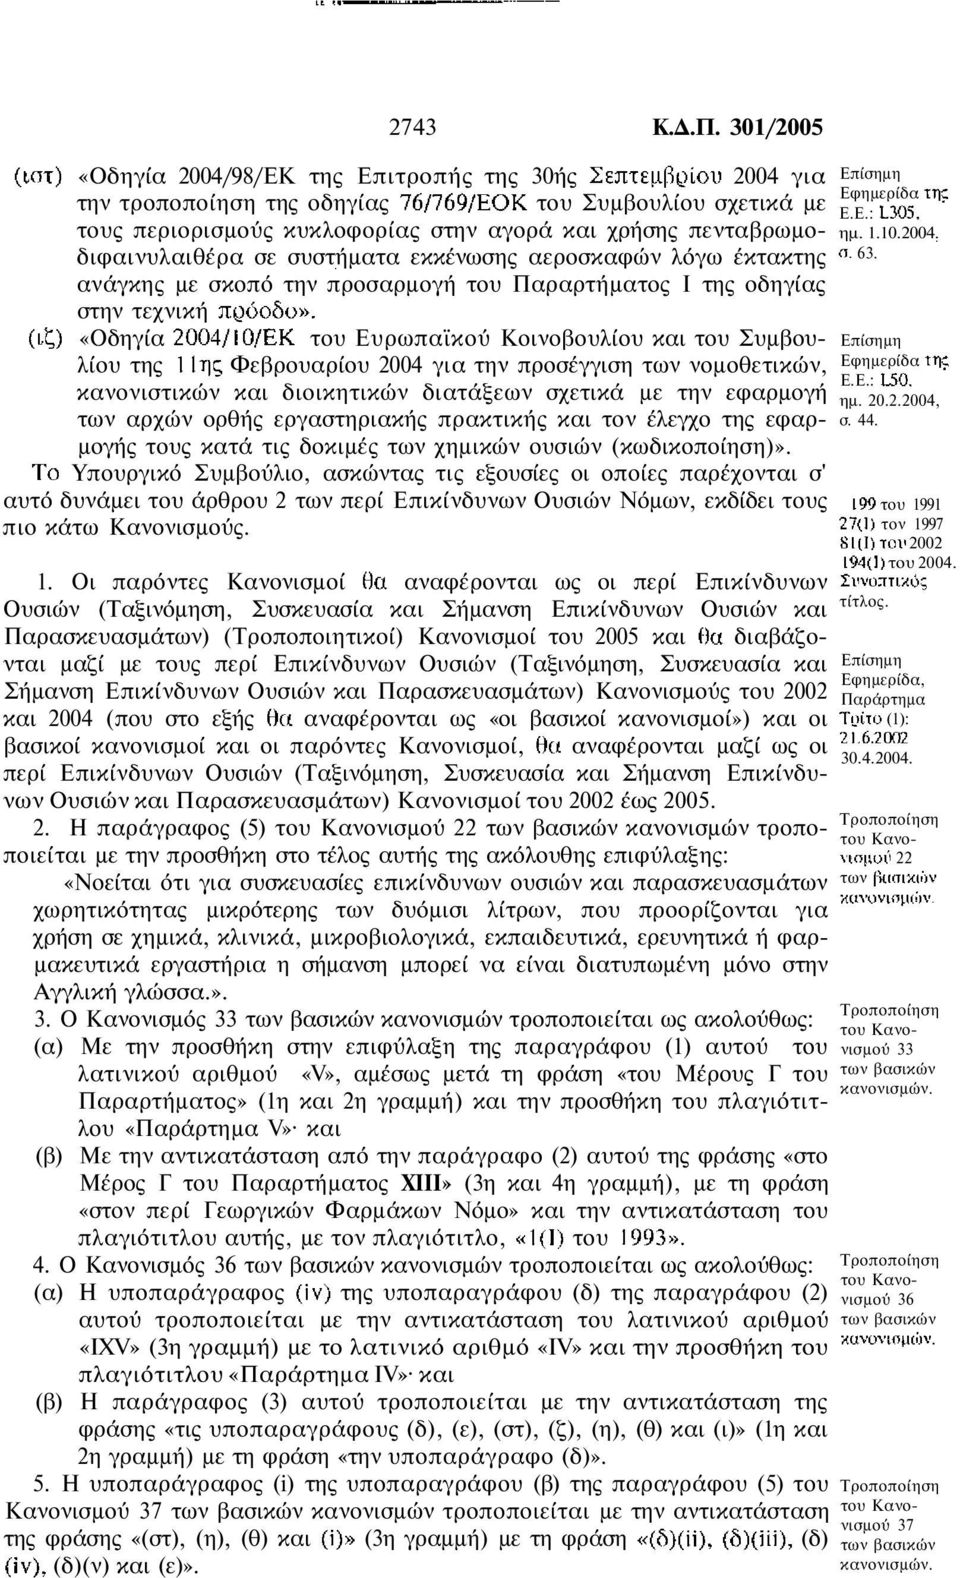 συστήµατα εκκένωσης αεροσκαφών λόγω έκτακτης ανάγκης µε σκοπό την προσαρµογή του Παραρτήµατος Ι της οδηγίας στην τεχνική «Οδηγία του Ευρωπαϊκού Κοινοβουλίου και του Συµβουλίου της Φεβρουαρίου 2004